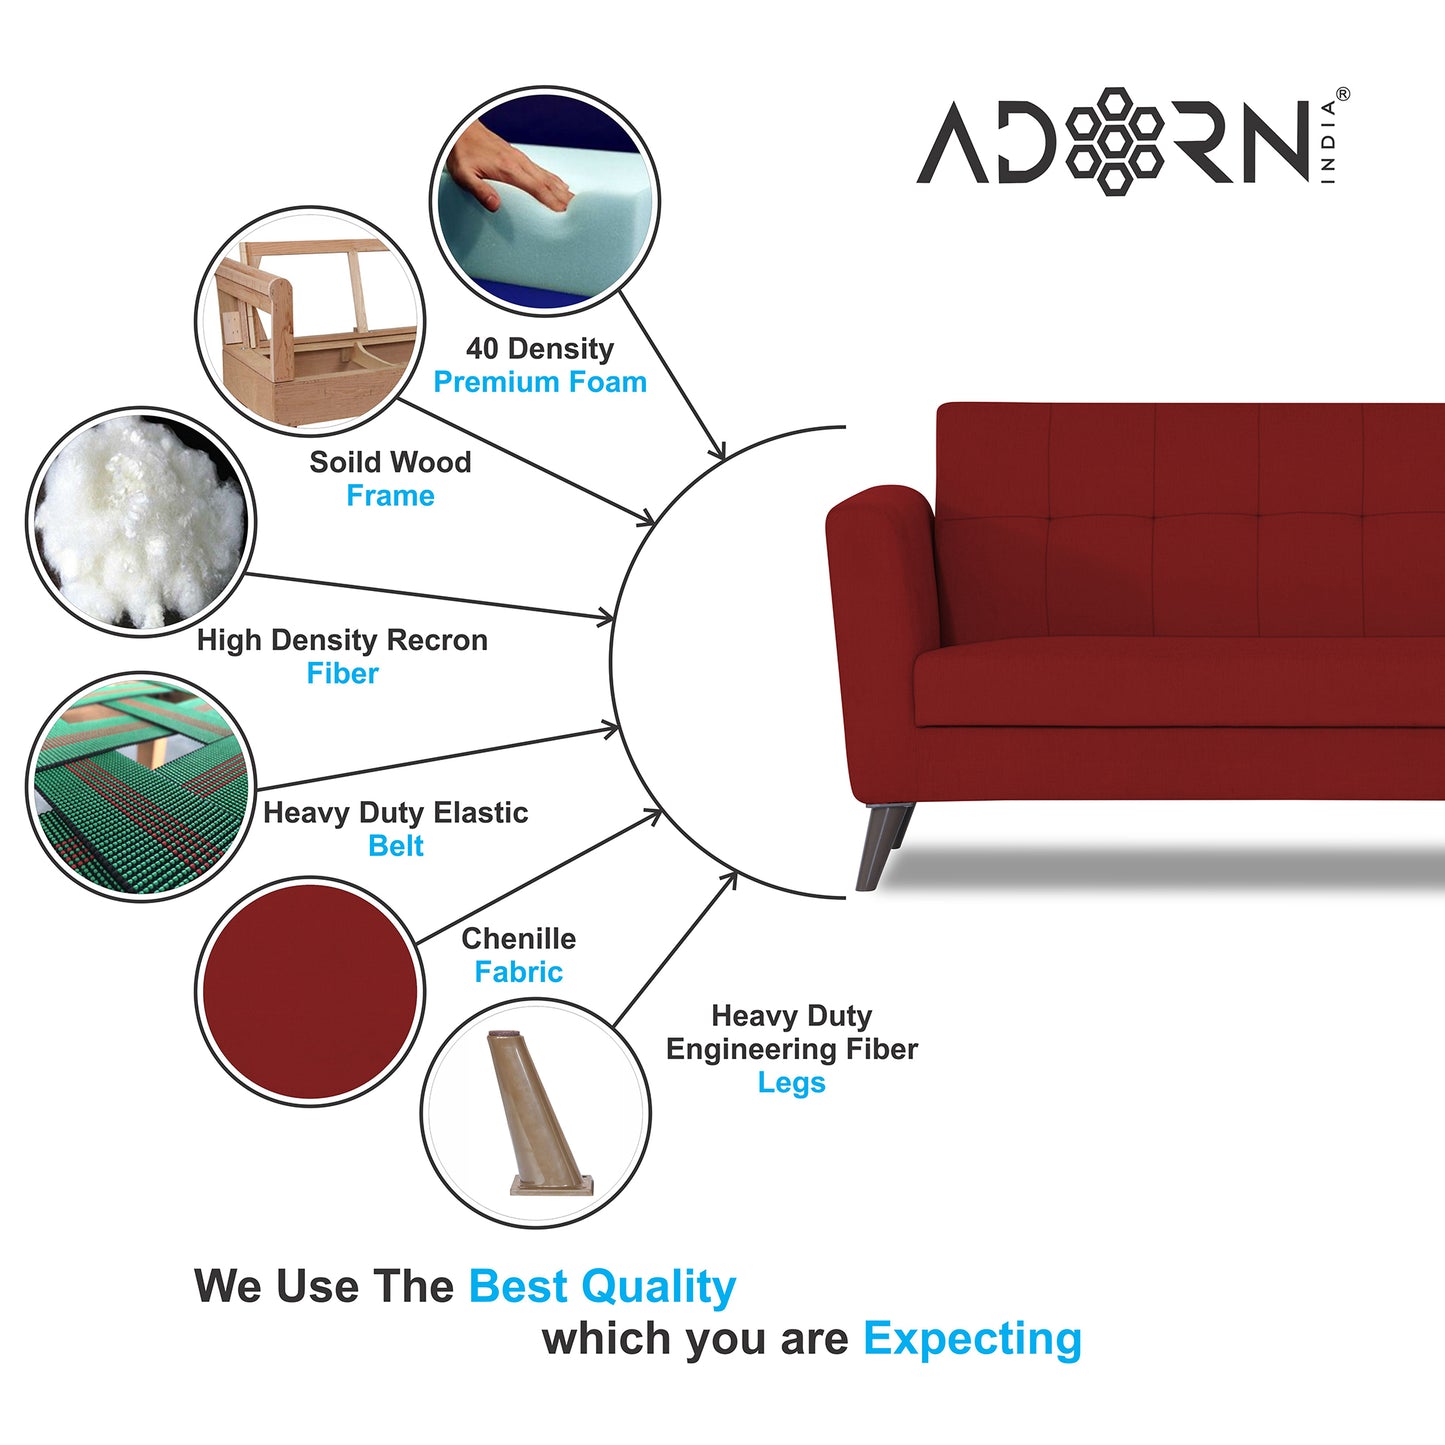 Adorn India Dannis 3+1+1 5 Seater Sofa Set